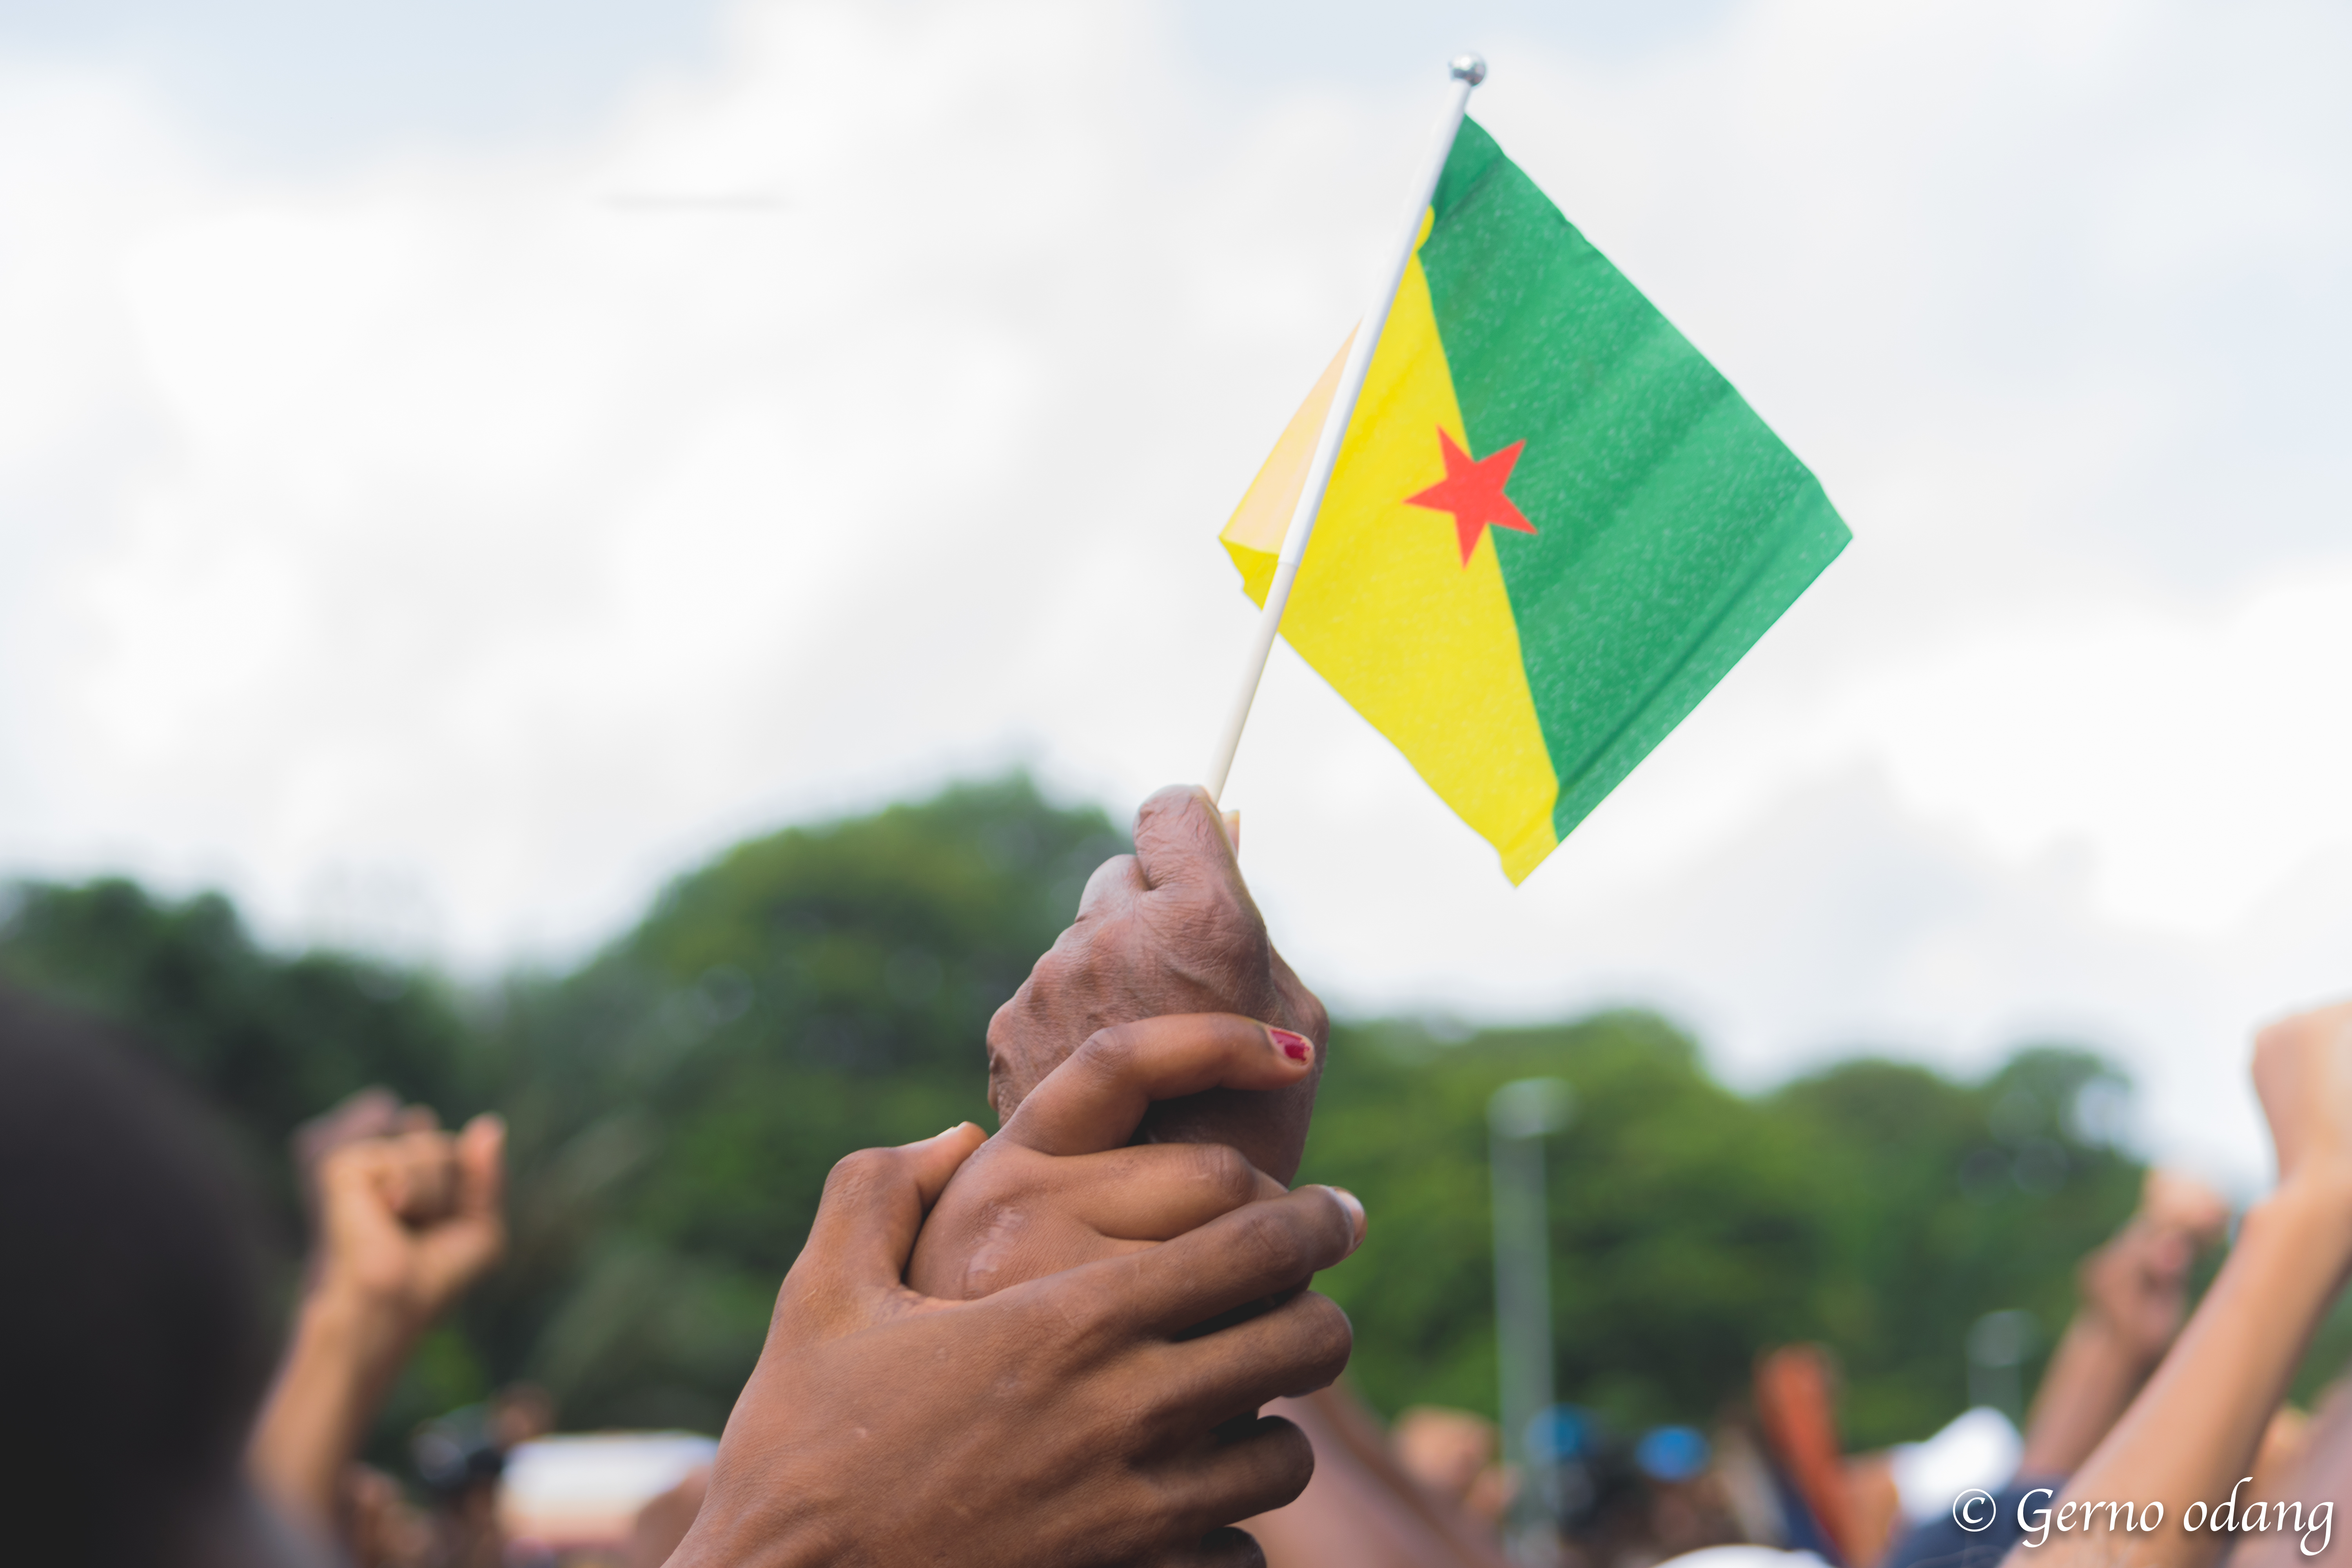 Crise sociale en Guyane: La signature d’un protocole d’accord « proche » selon le préfet et le collectif